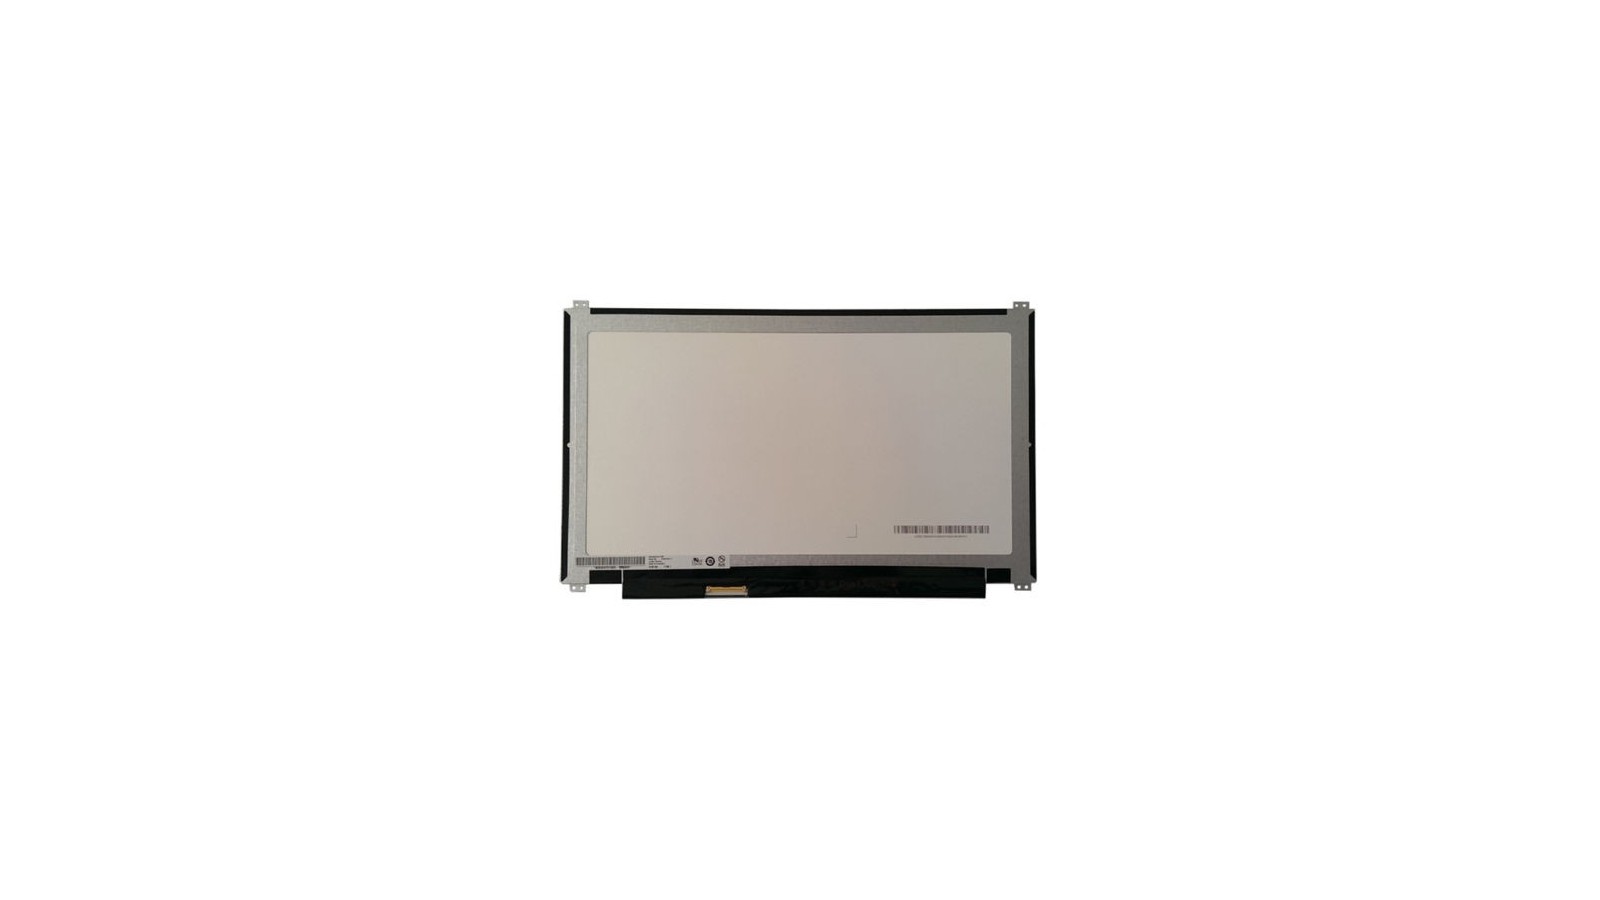 Display LCD Schermo 13,3 Led compatibile con B133XTN01.5